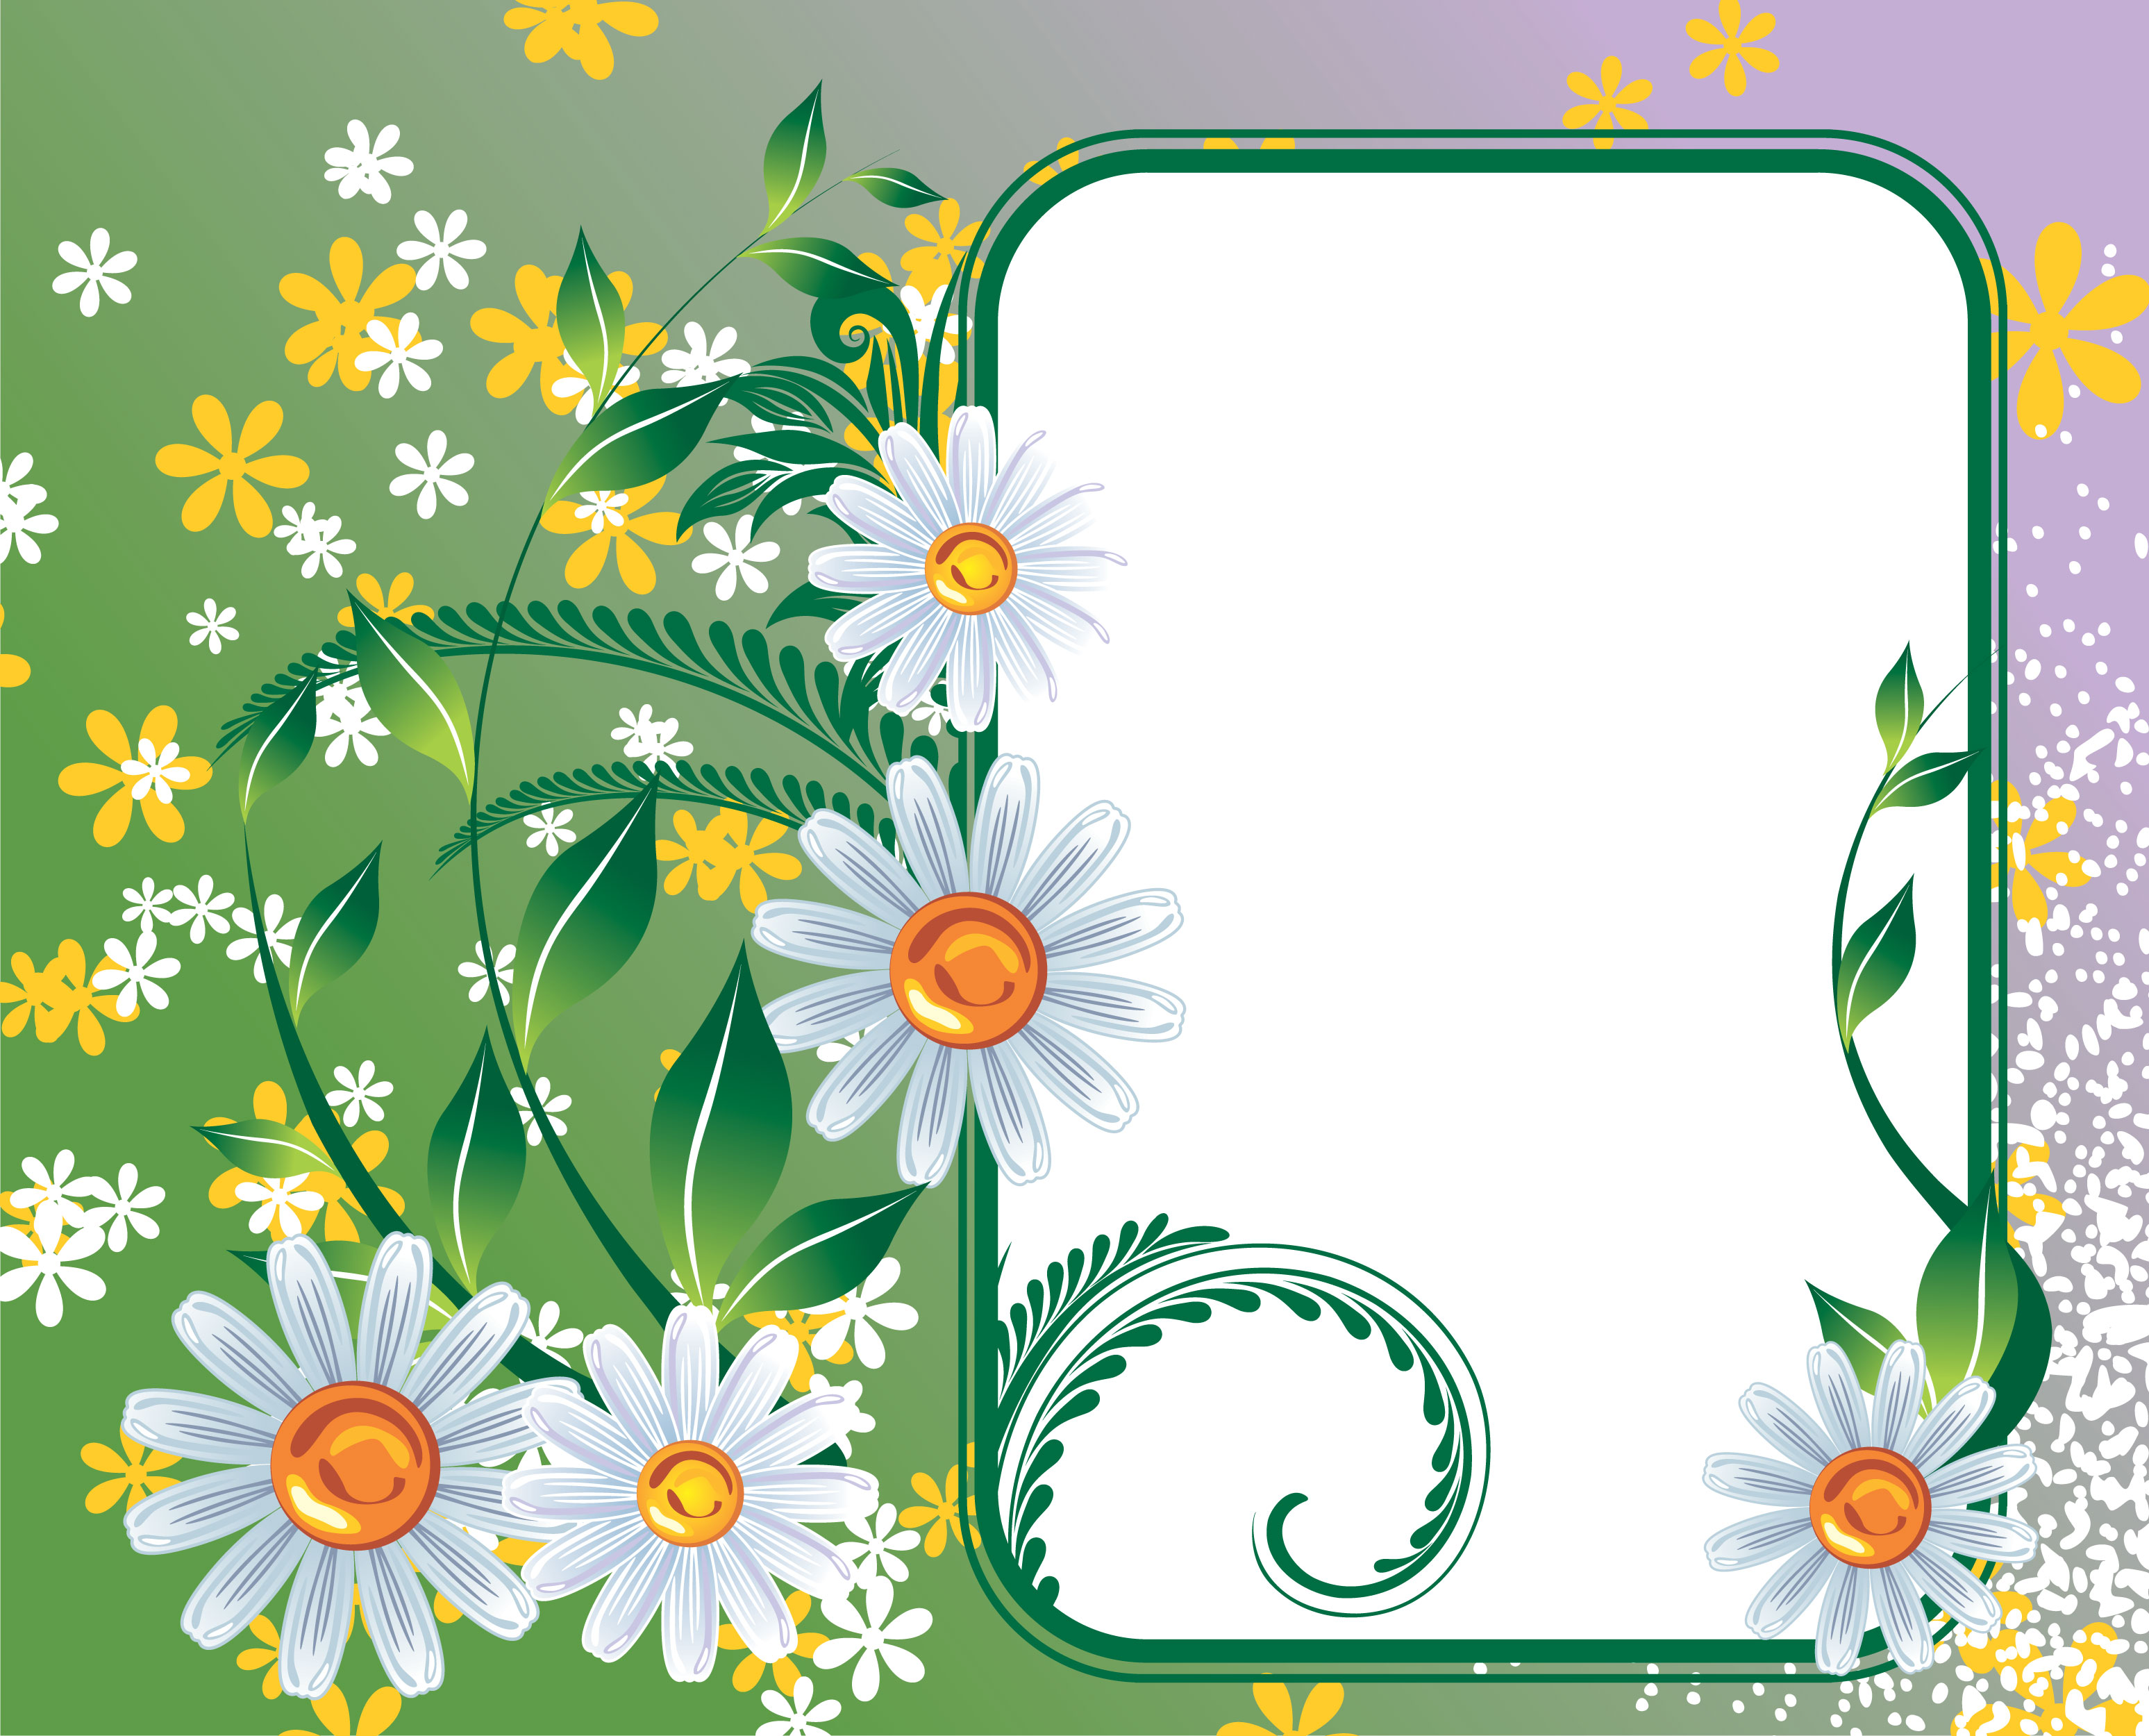 壁紙 背景イラスト 花のフレーム 外枠 No 172 白黄 緑葉 縦窓